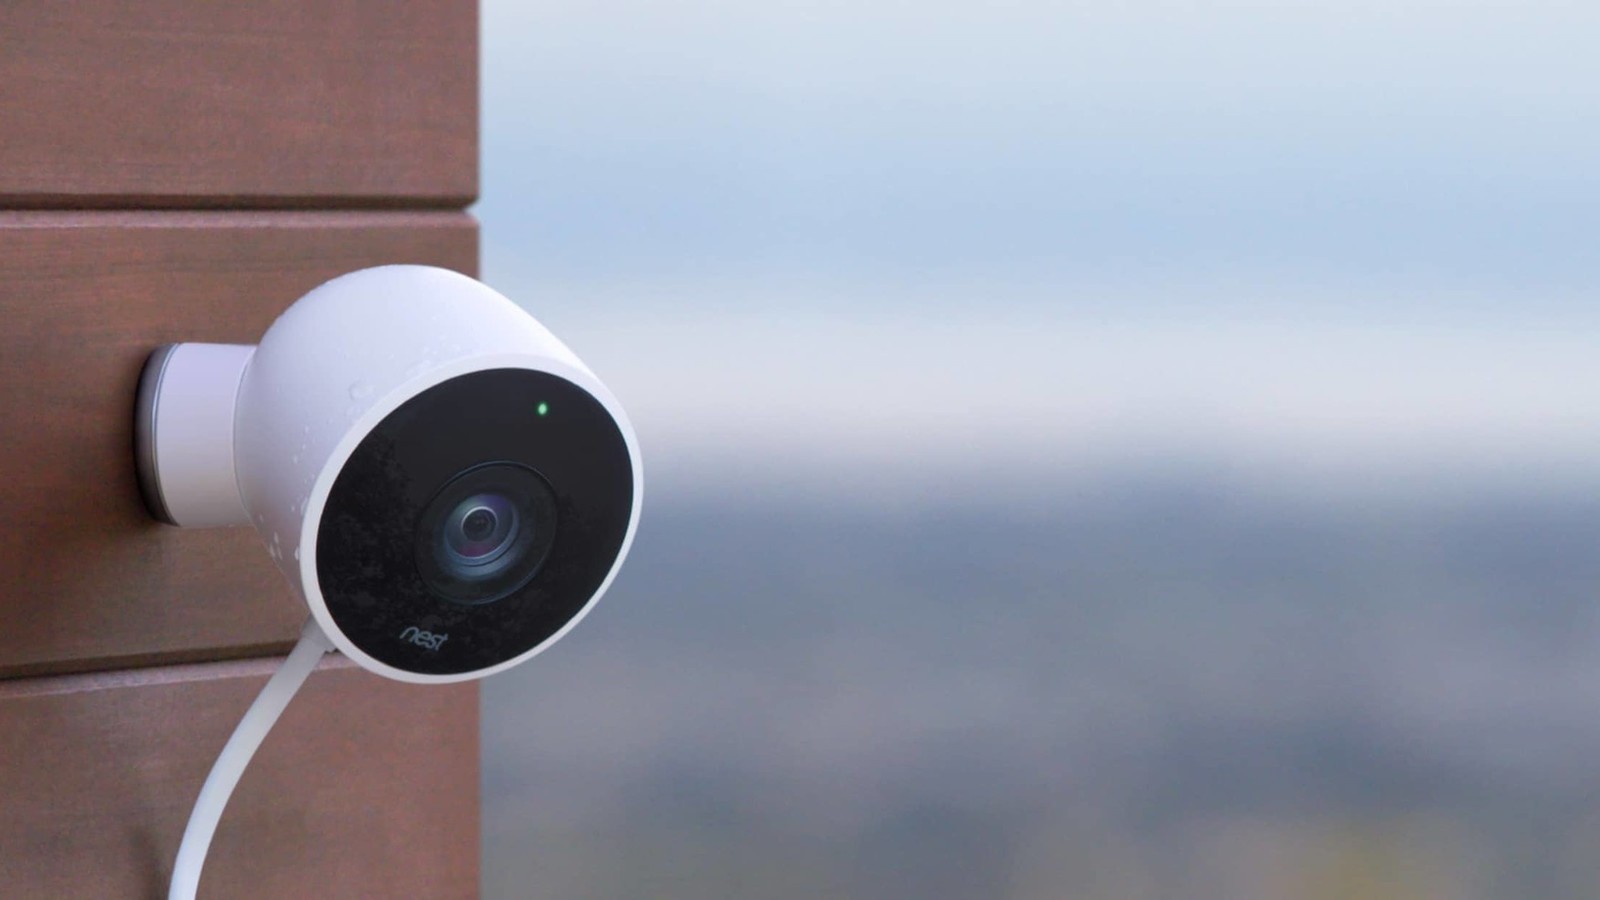 En accédant à l'activité d'un réseau domestique, un pirate peut identifier le flux d'une caméra et savoir si des données sont envoyées. © Nest